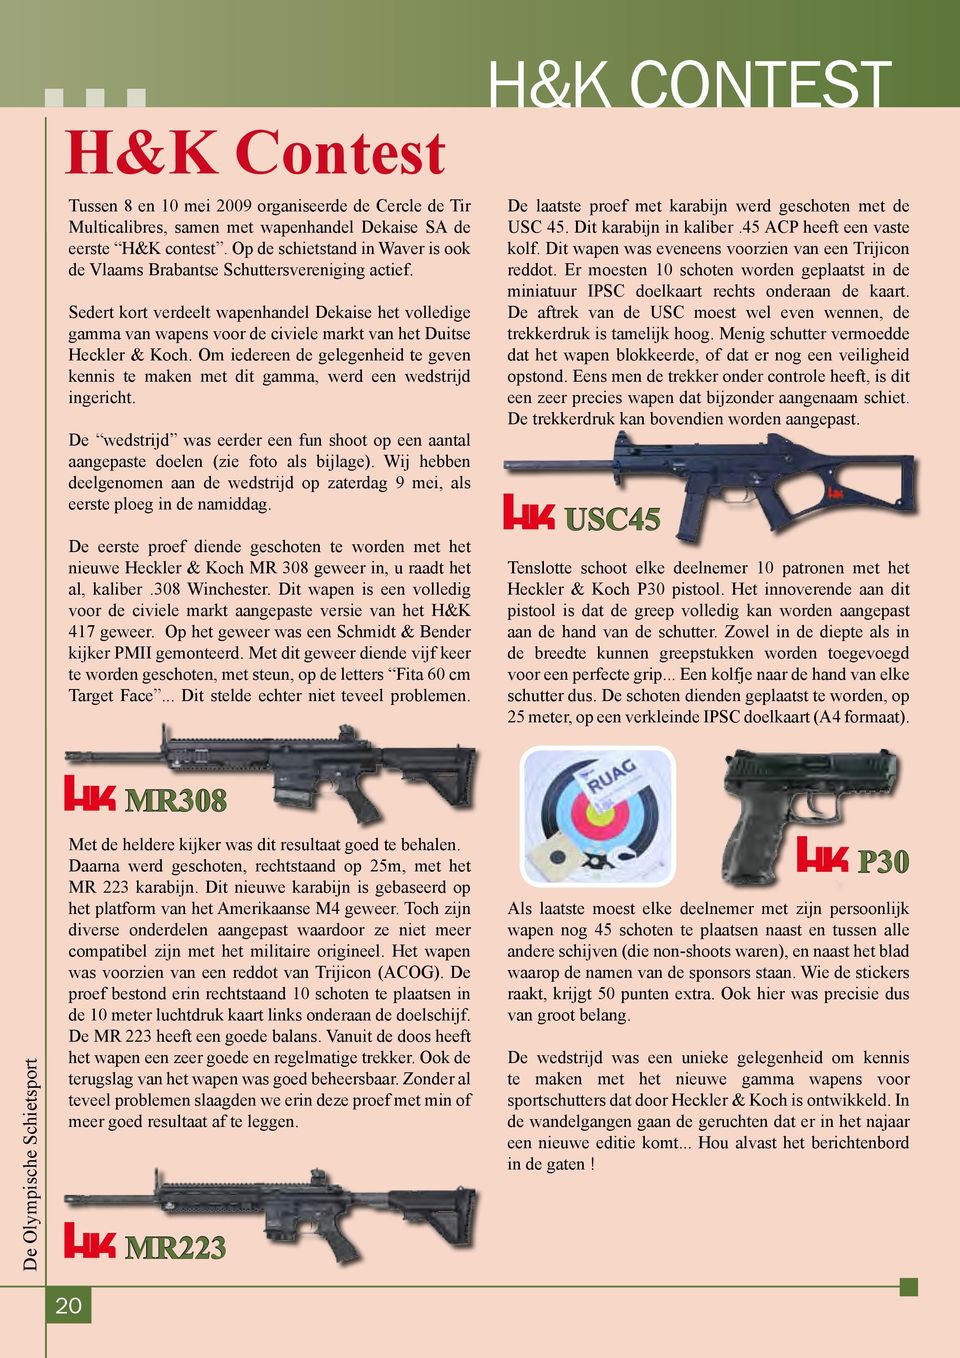 Sedert kort verdeelt wapenhandel Dekaise het volledige gamma van wapens voor de civiele markt van het Duitse Heckler & Koch.